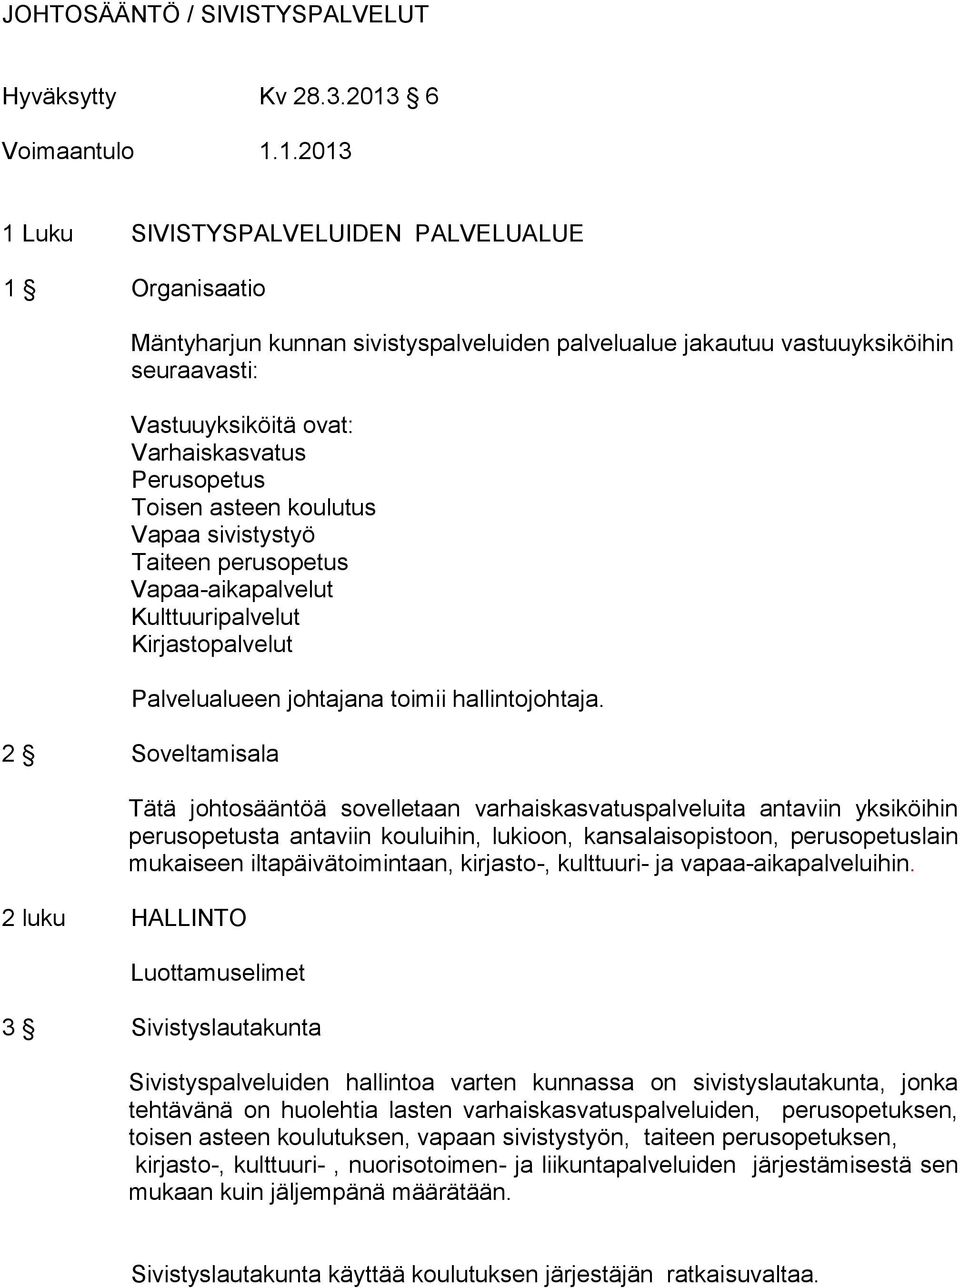 1.2013 1 Luku SIVISTYSPALVELUIDEN PALVELUALUE 1 Organisaatio Mäntyharjun kunnan sivistyspalveluiden palvelualue jakautuu vastuuyksiköihin seuraavasti: Vastuuyksiköitä ovat: Varhaiskasvatus